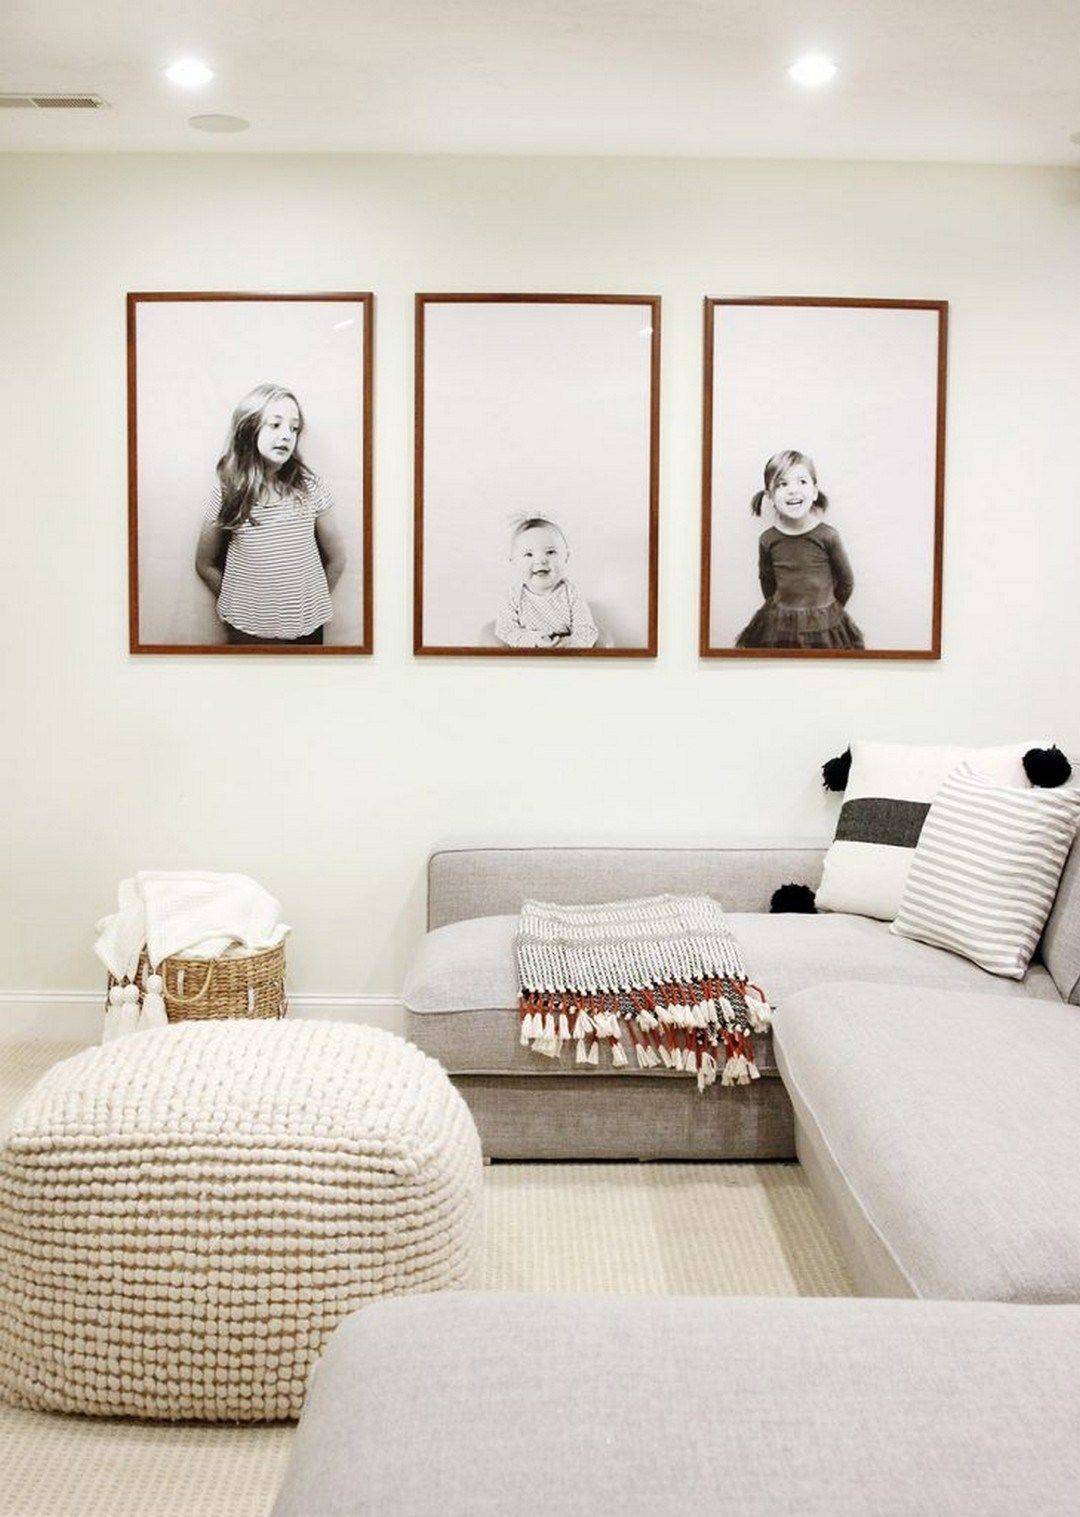 Salón boho con sofá modular gris, puf, cesta de fibras y fotos familiares en blanco y negro en la pared